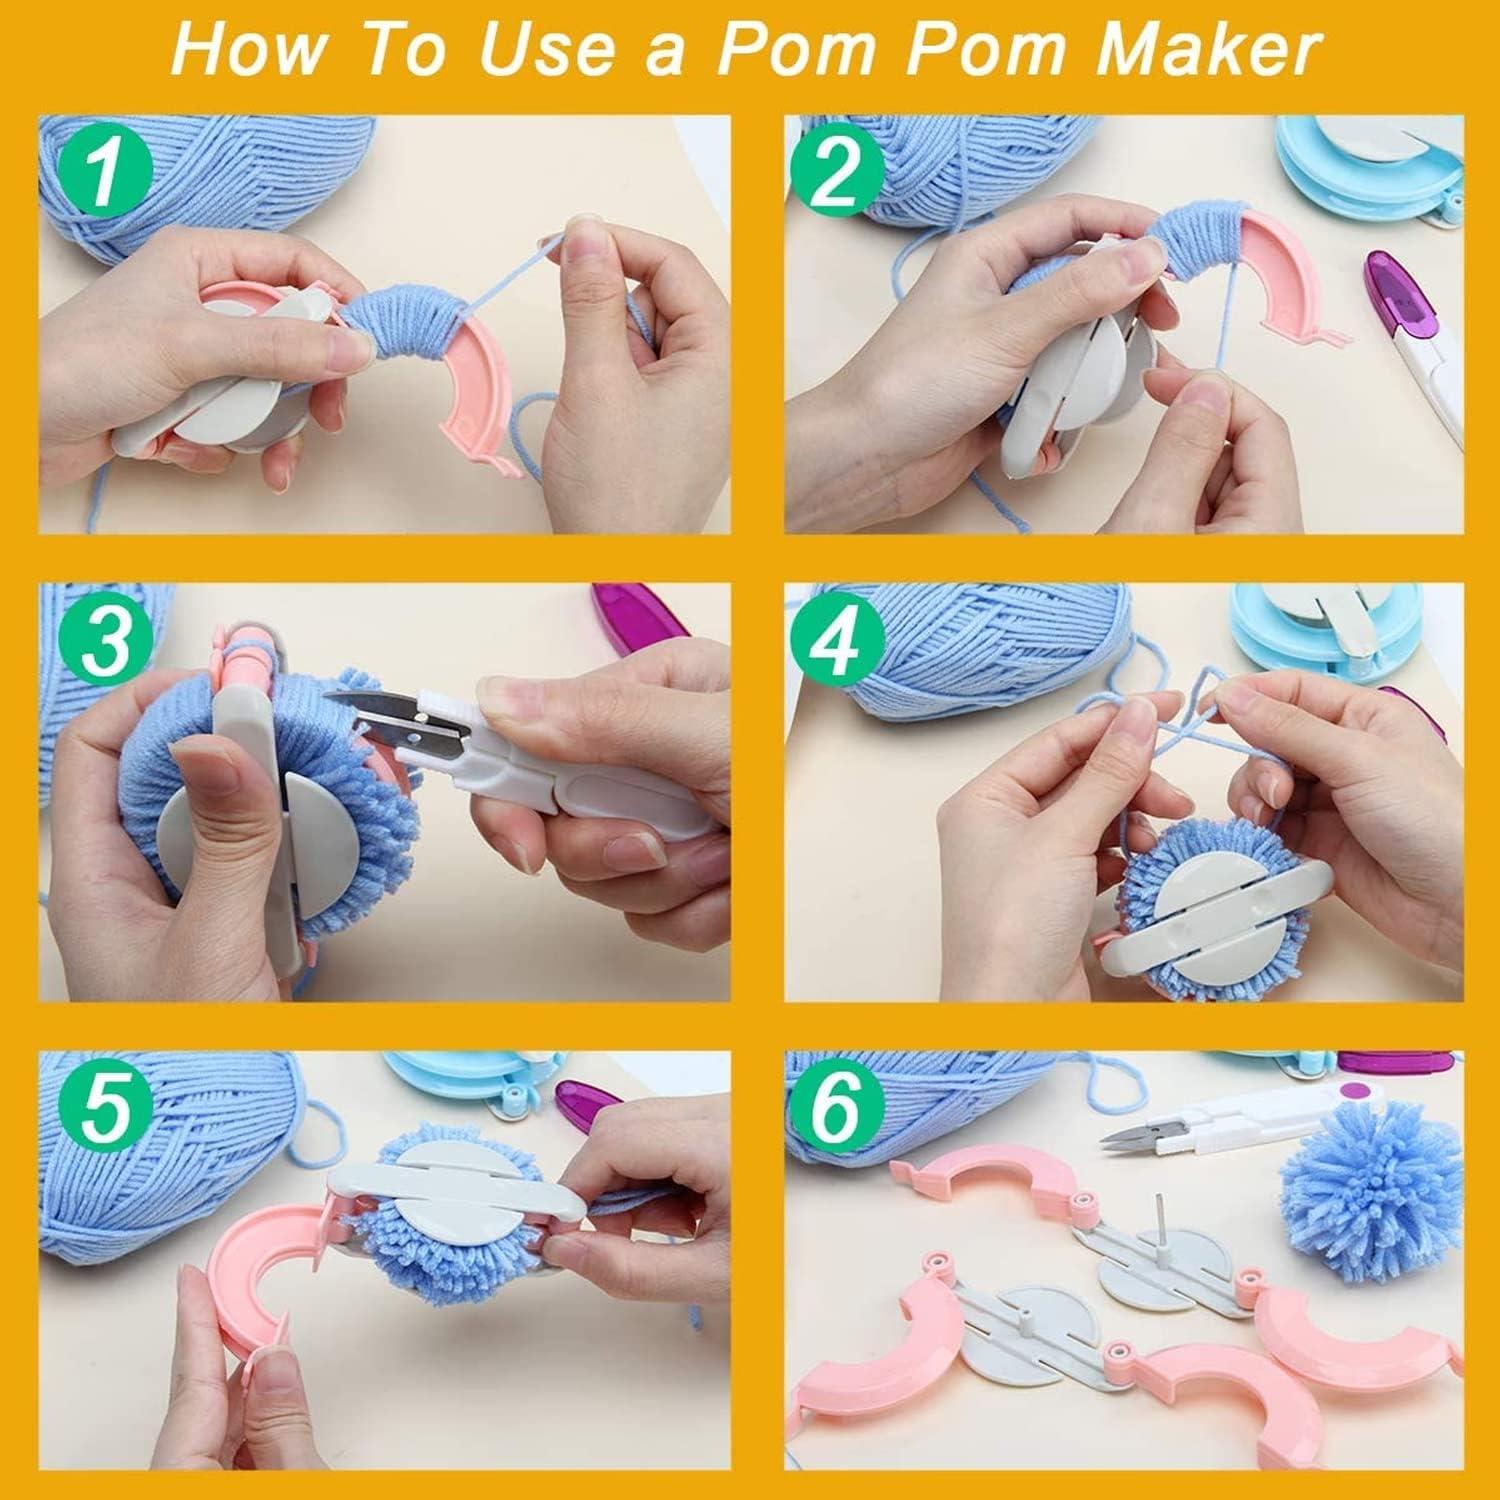 How To Use a Pom Pom Maker